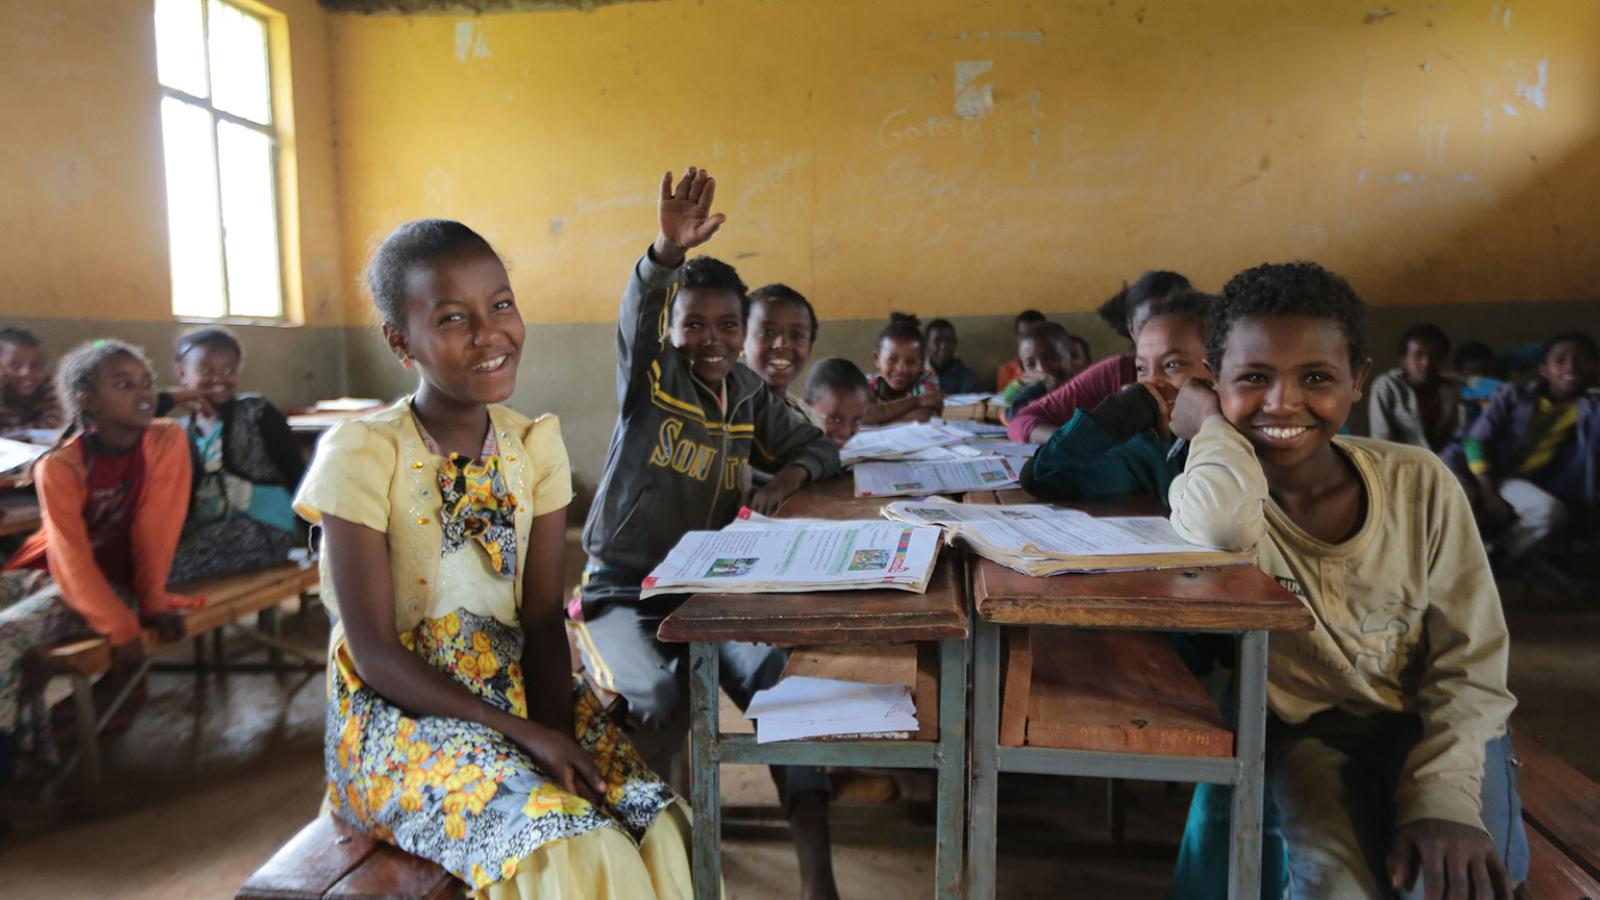 Children in a school room in Ethiopia